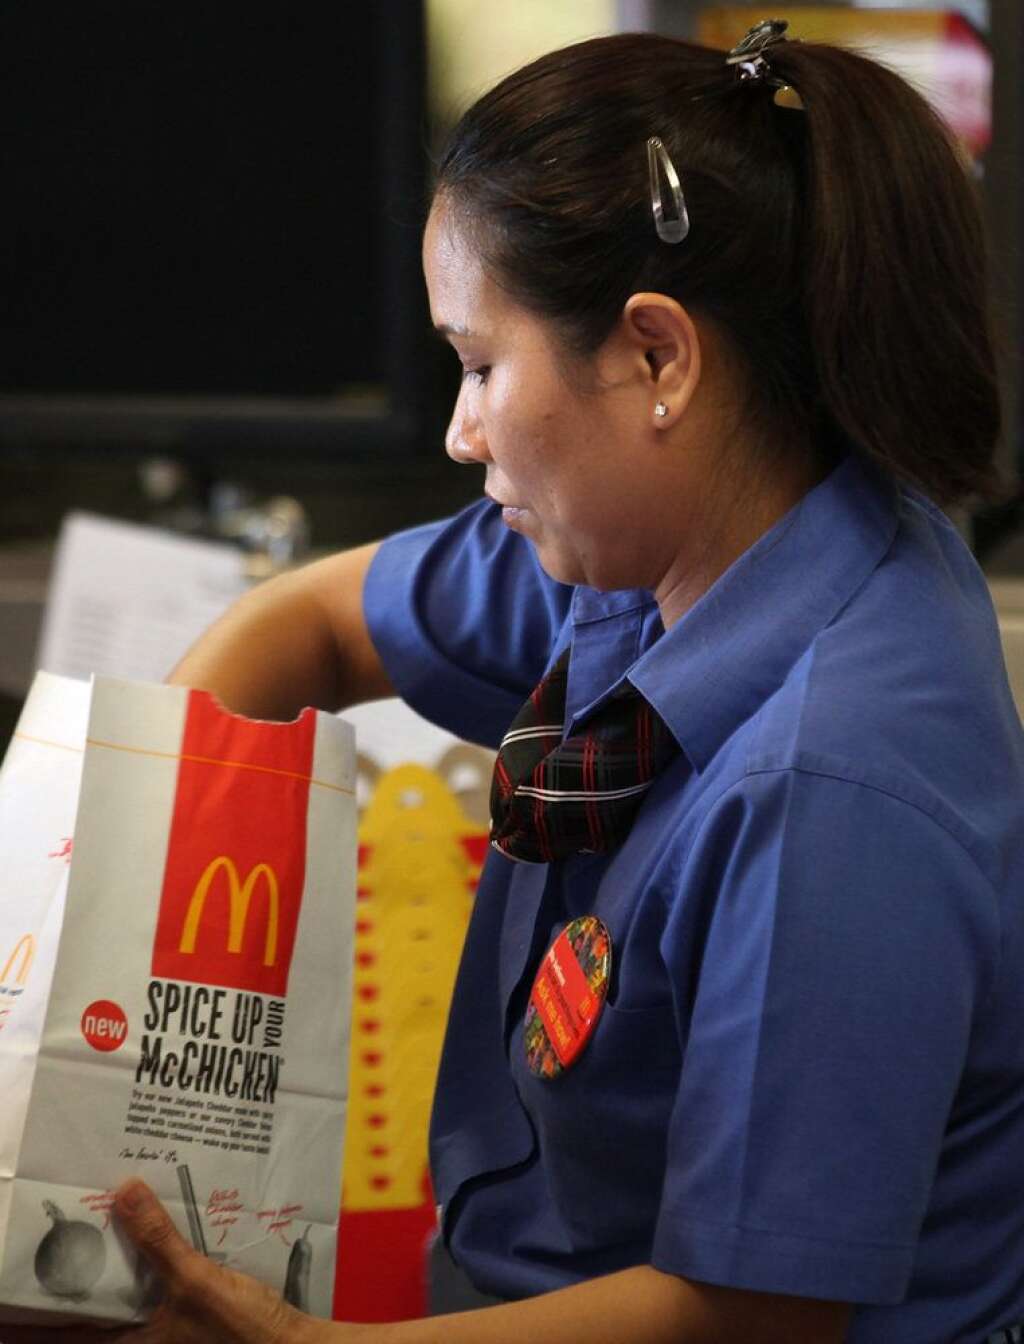 Une de ses franchises a été accusée d’exploiter ses employés - Le propriétaire d’une franchise McDonald's a dû quitter l’entreprise après avoir été accusé d’exploiter des étudiants étrangers en les payant en-dessous du salaire minimum et en leur fournissant des logements insalubres.